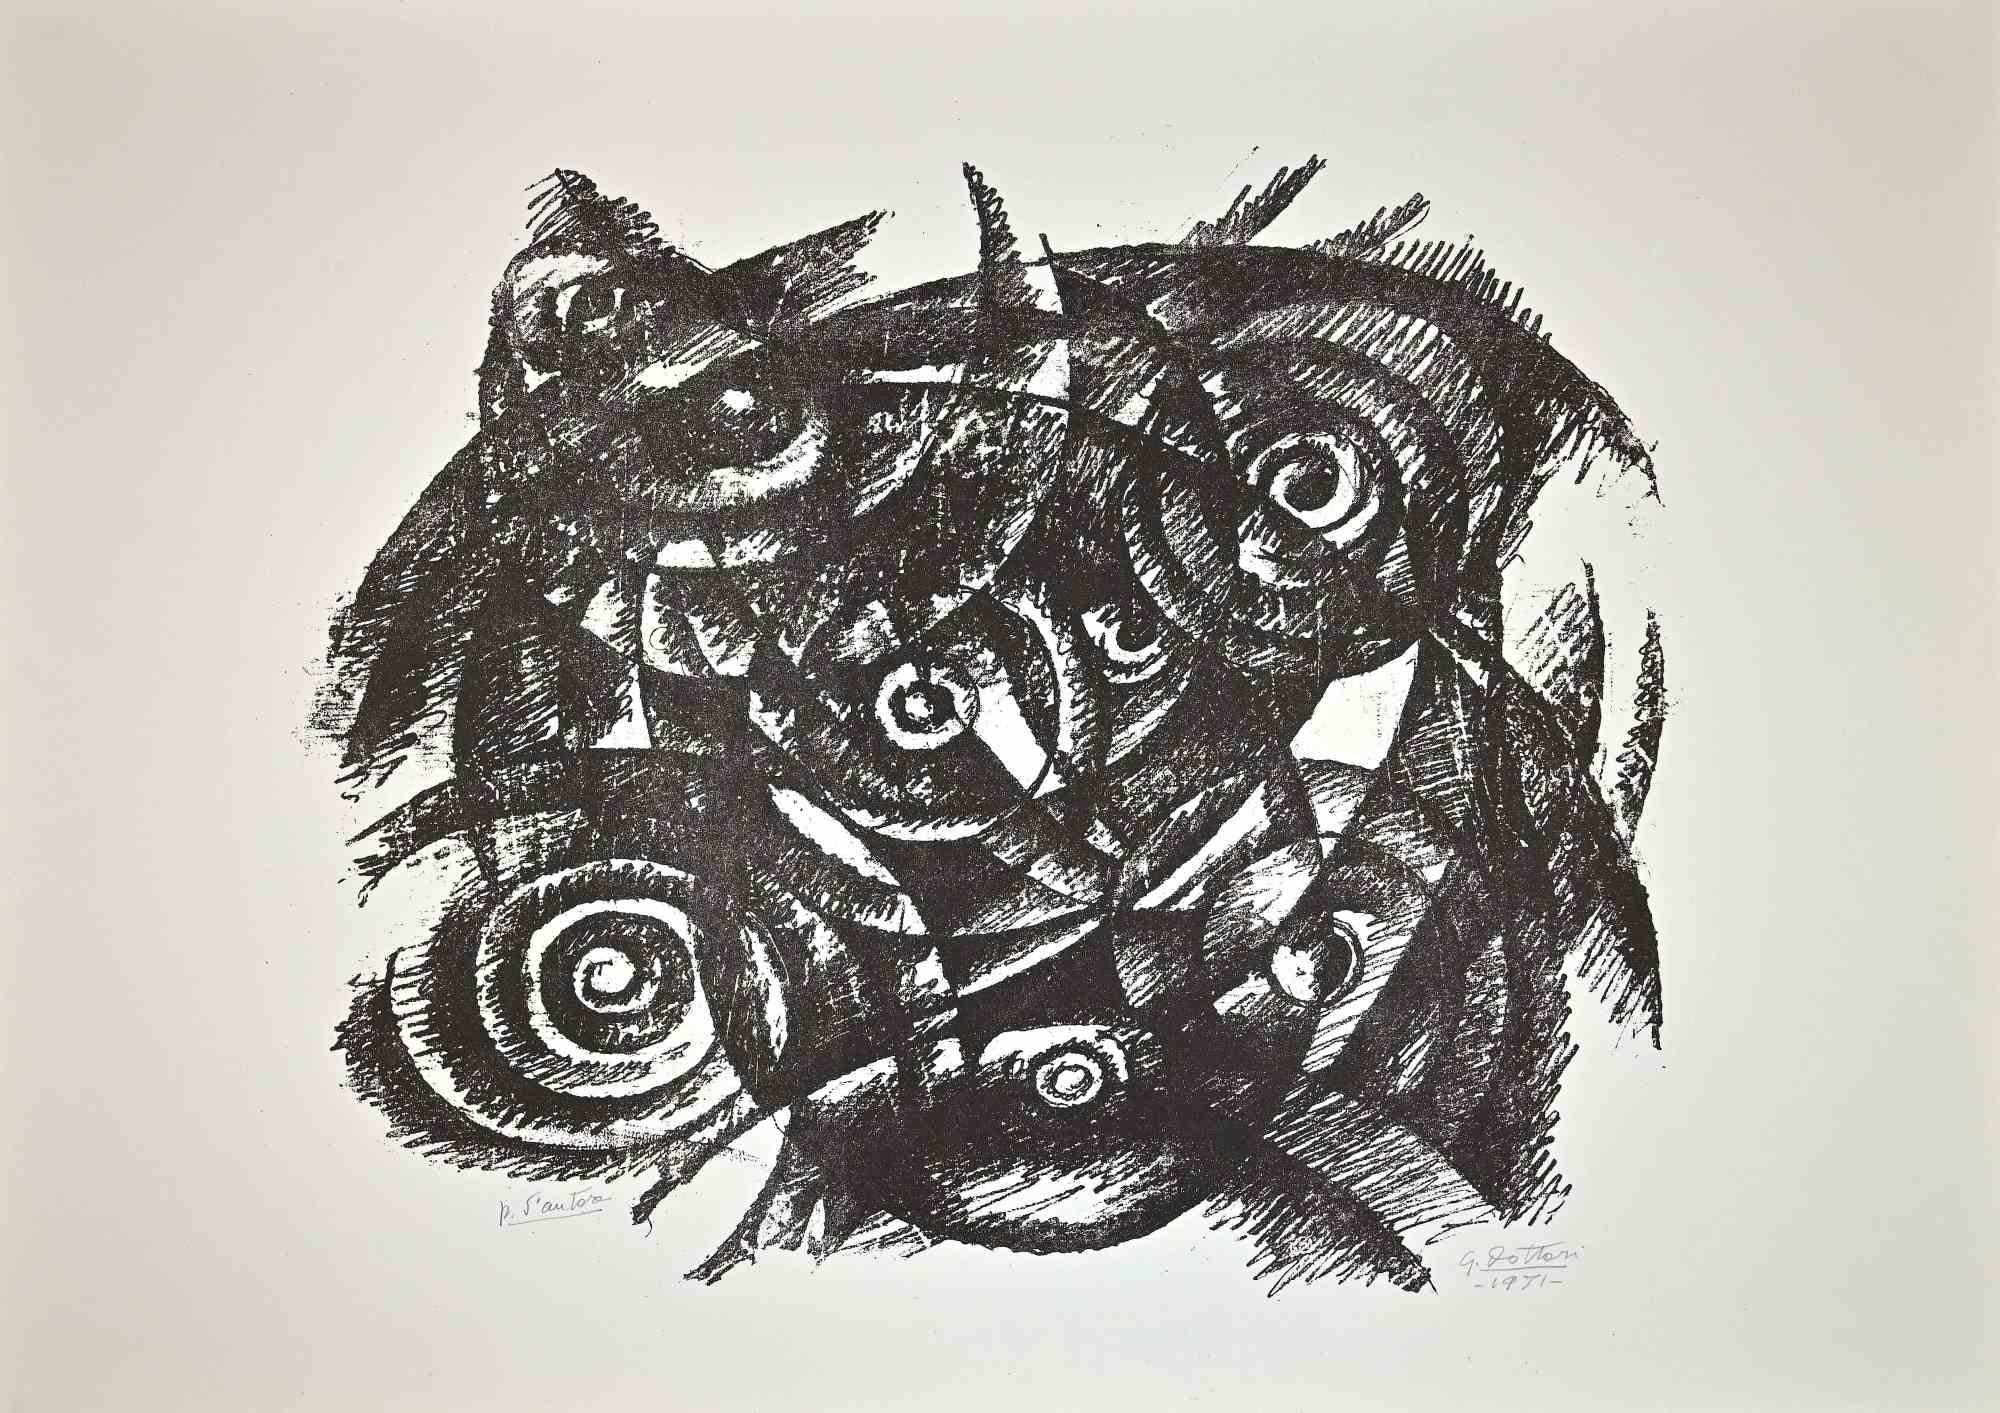 Composition abstraite - Lithographie de Gerardo Dottori - 1971 